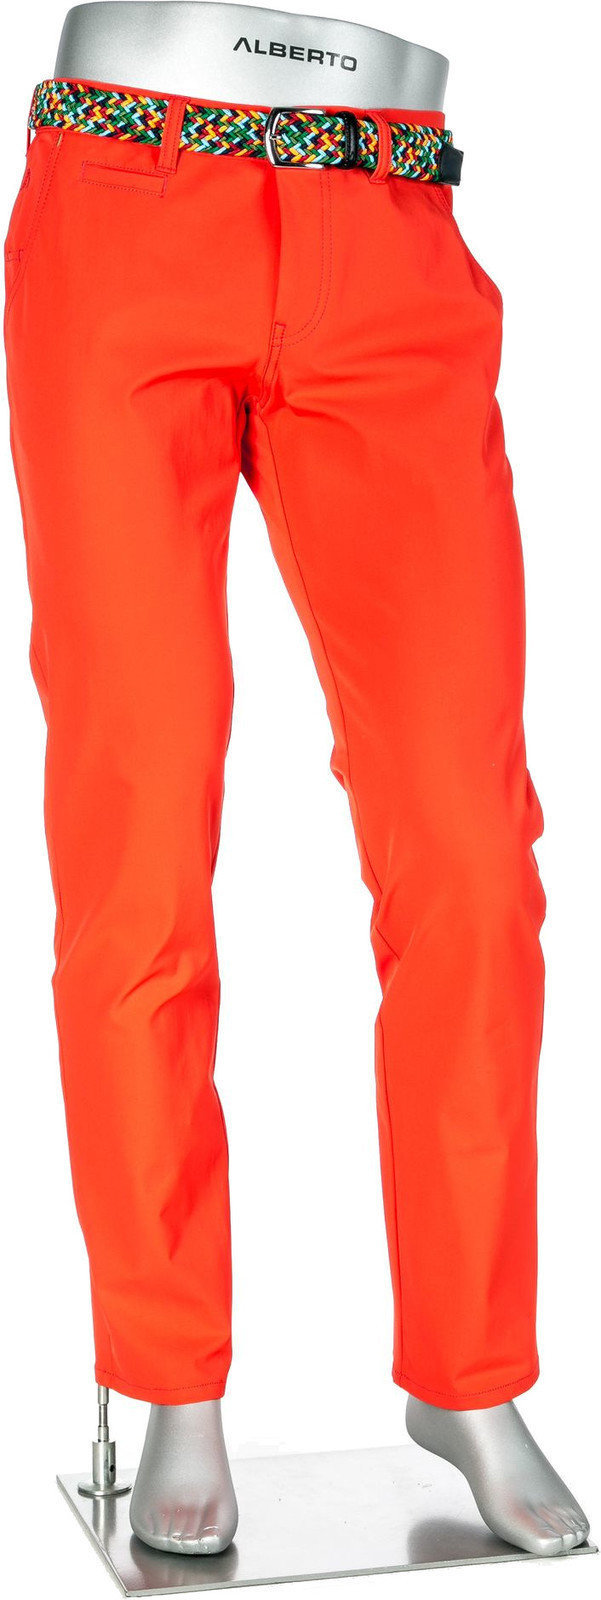 Broek Alberto Rookie 3xDRY Cooler Mens Trousers Orange 52